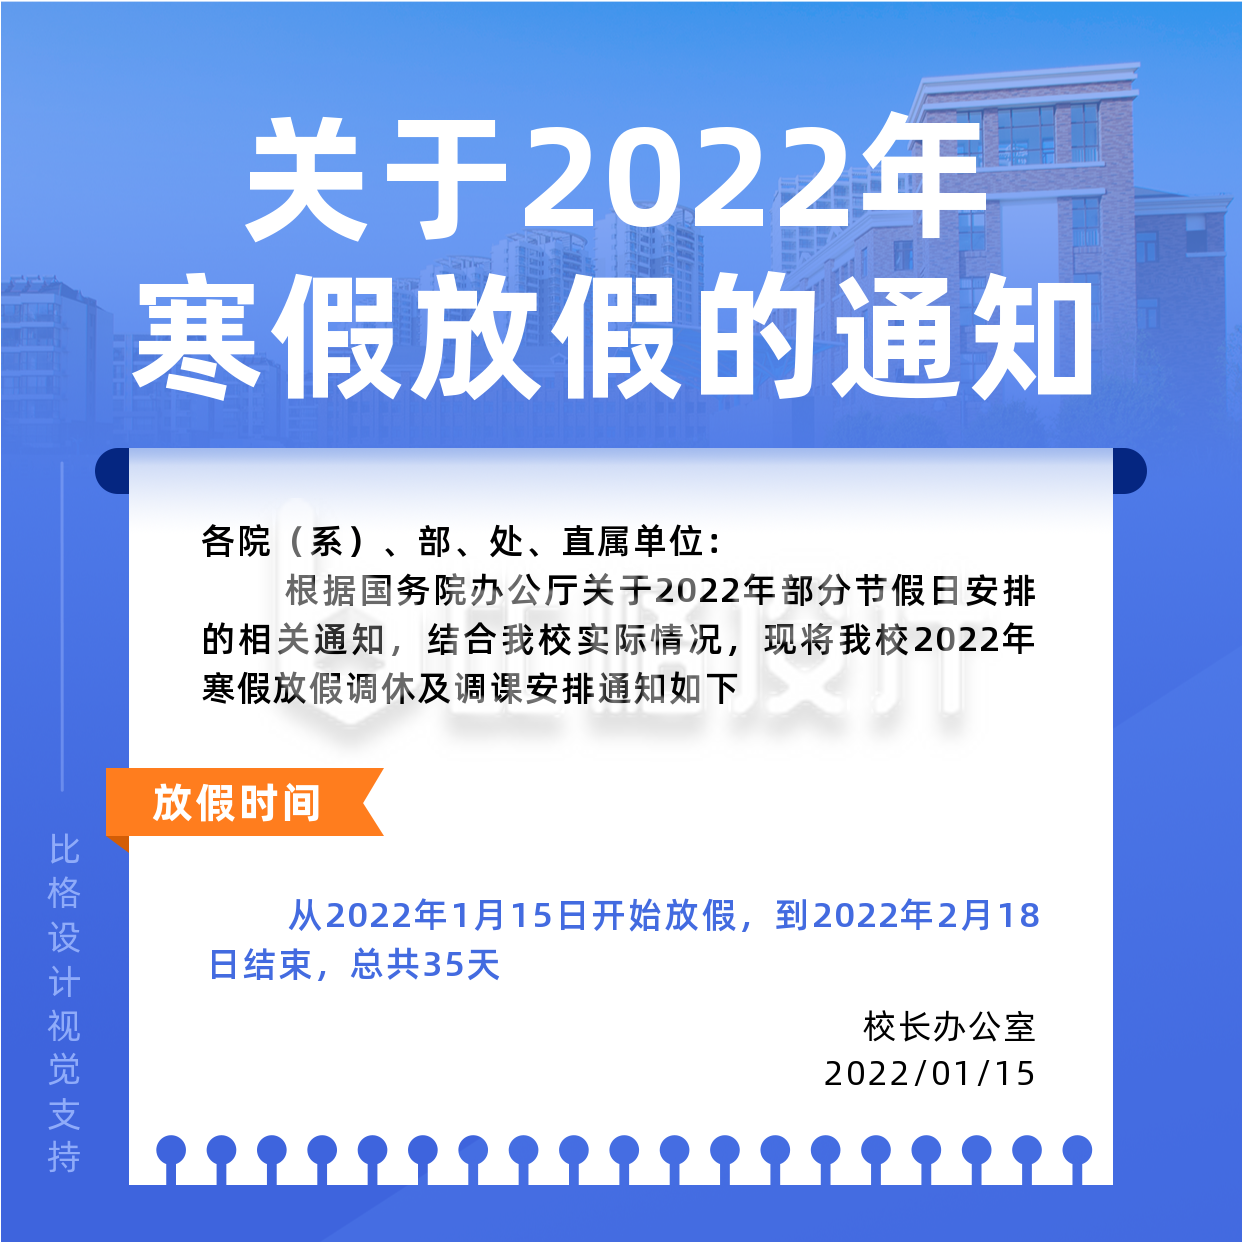 2022年学校放假通知简约实景蓝色方形海报